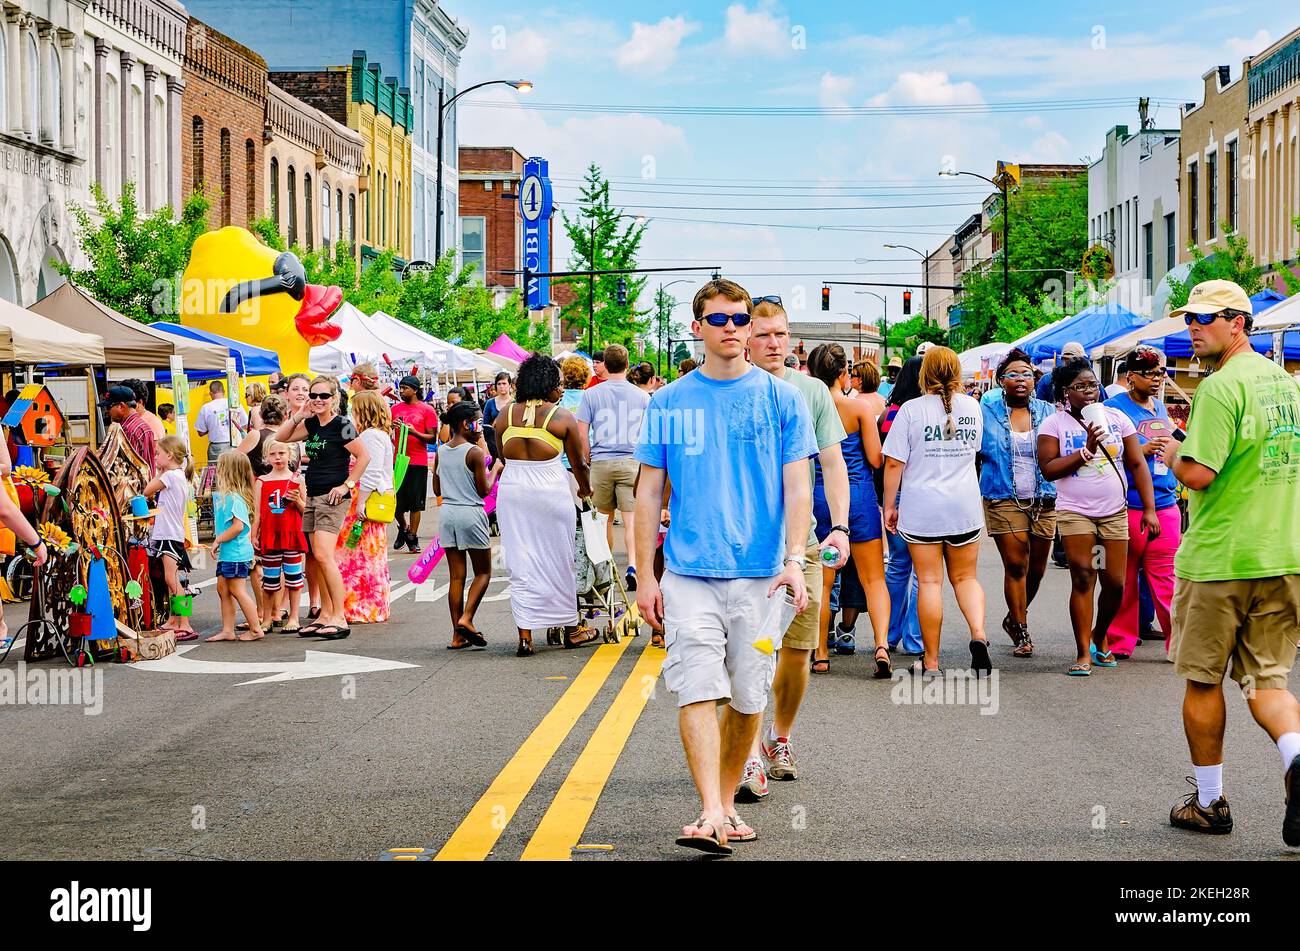 Beim Market Street Festival am 5. Mai 2012 in Columbus, Mississippi, laufen Menschen an Straßenverkäufern vorbei. Stockfoto